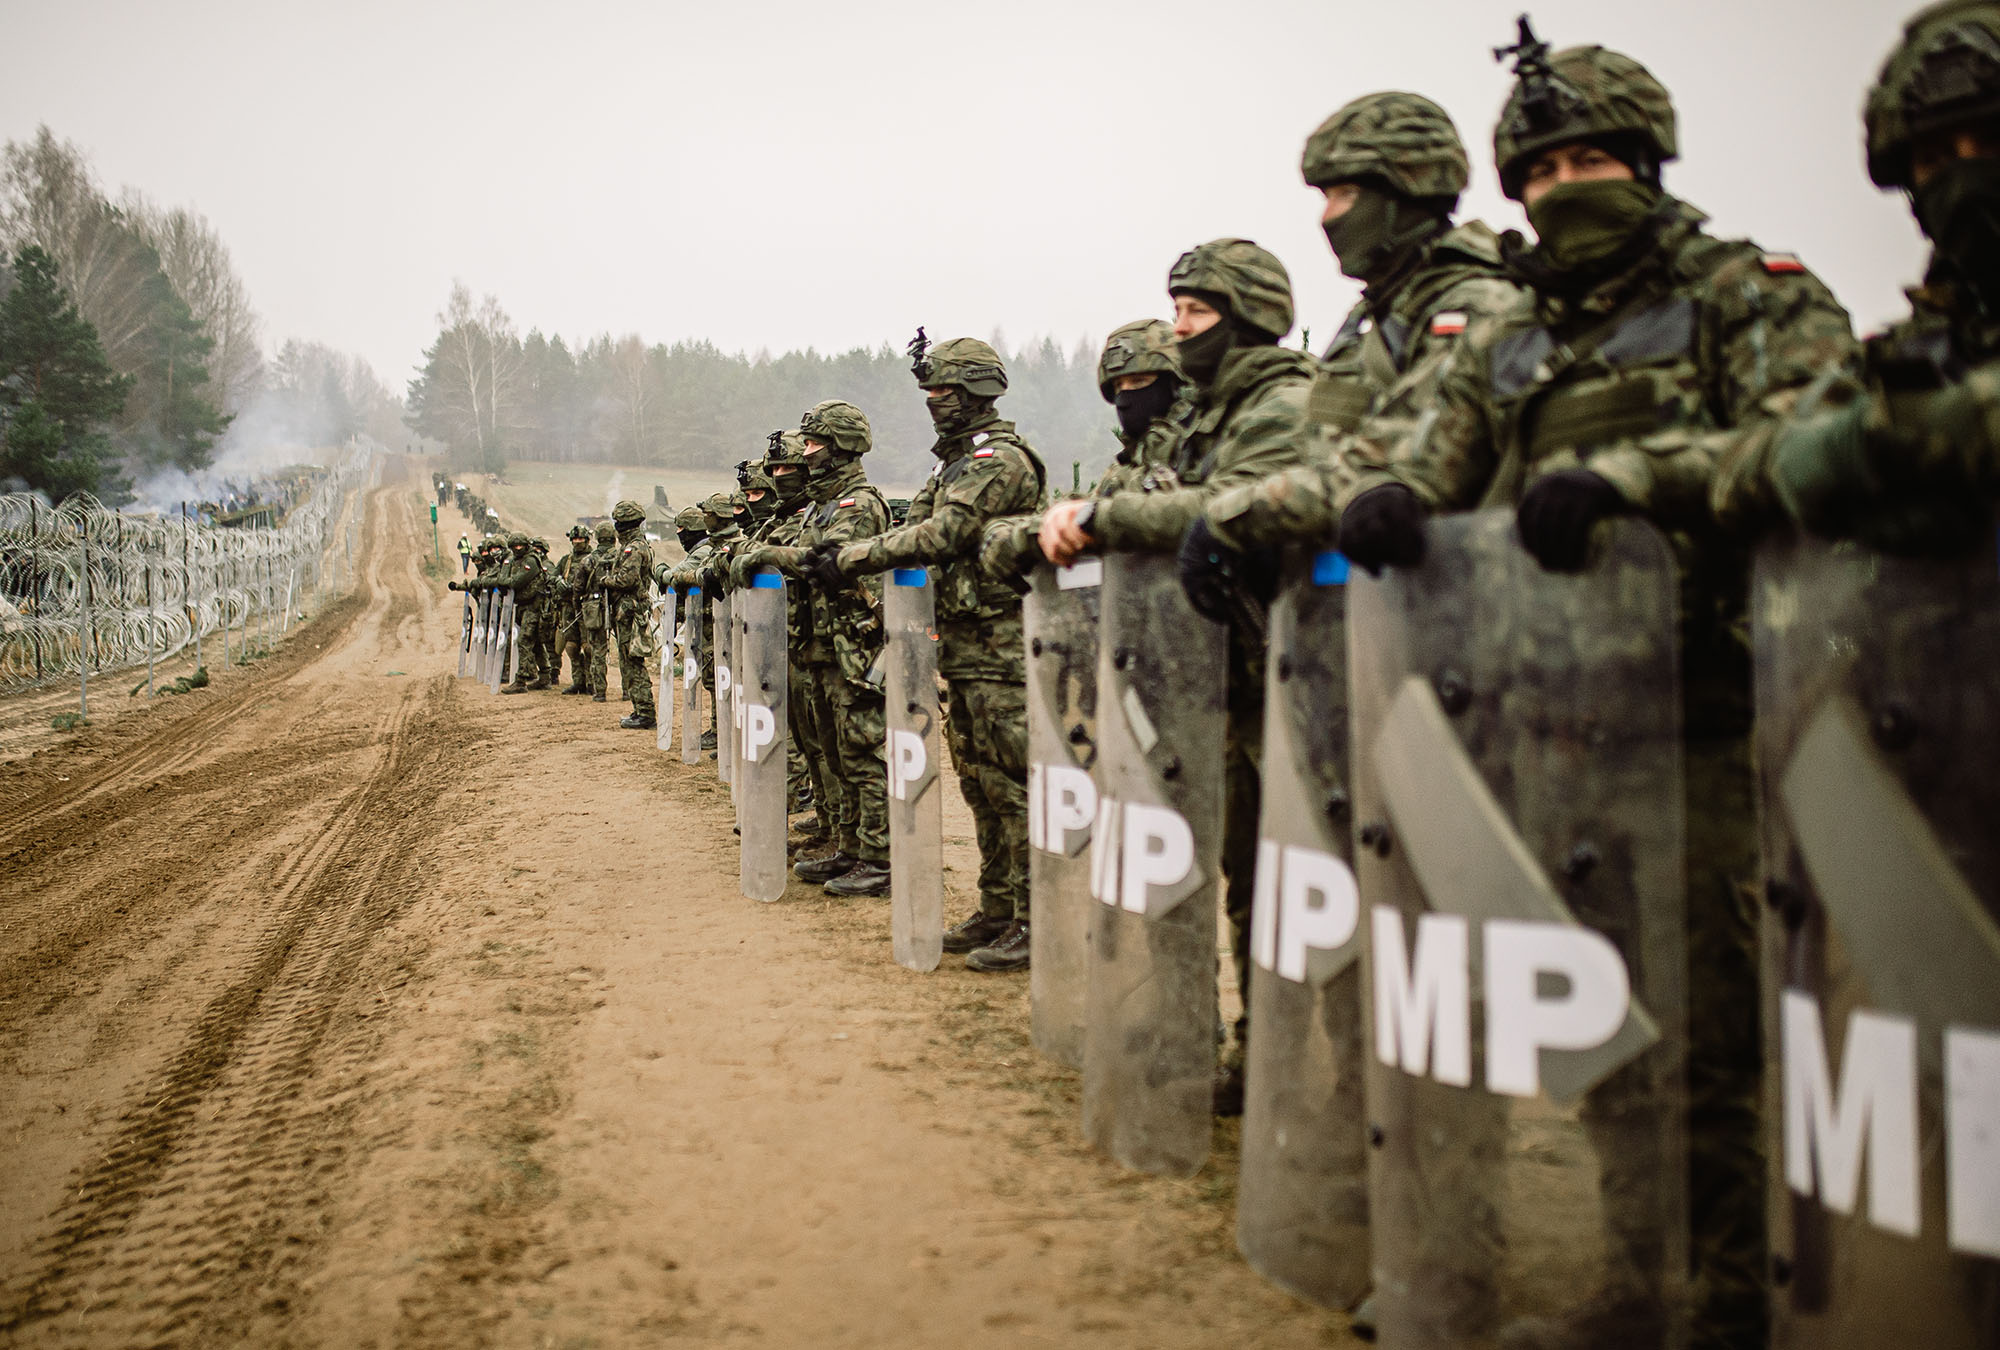 Солдаты Вооружённых сил Польши патрулируют белорусско-польскую границу. Фото © Getty Images / Irek Dorozanski / Polish Ministry of National Defence